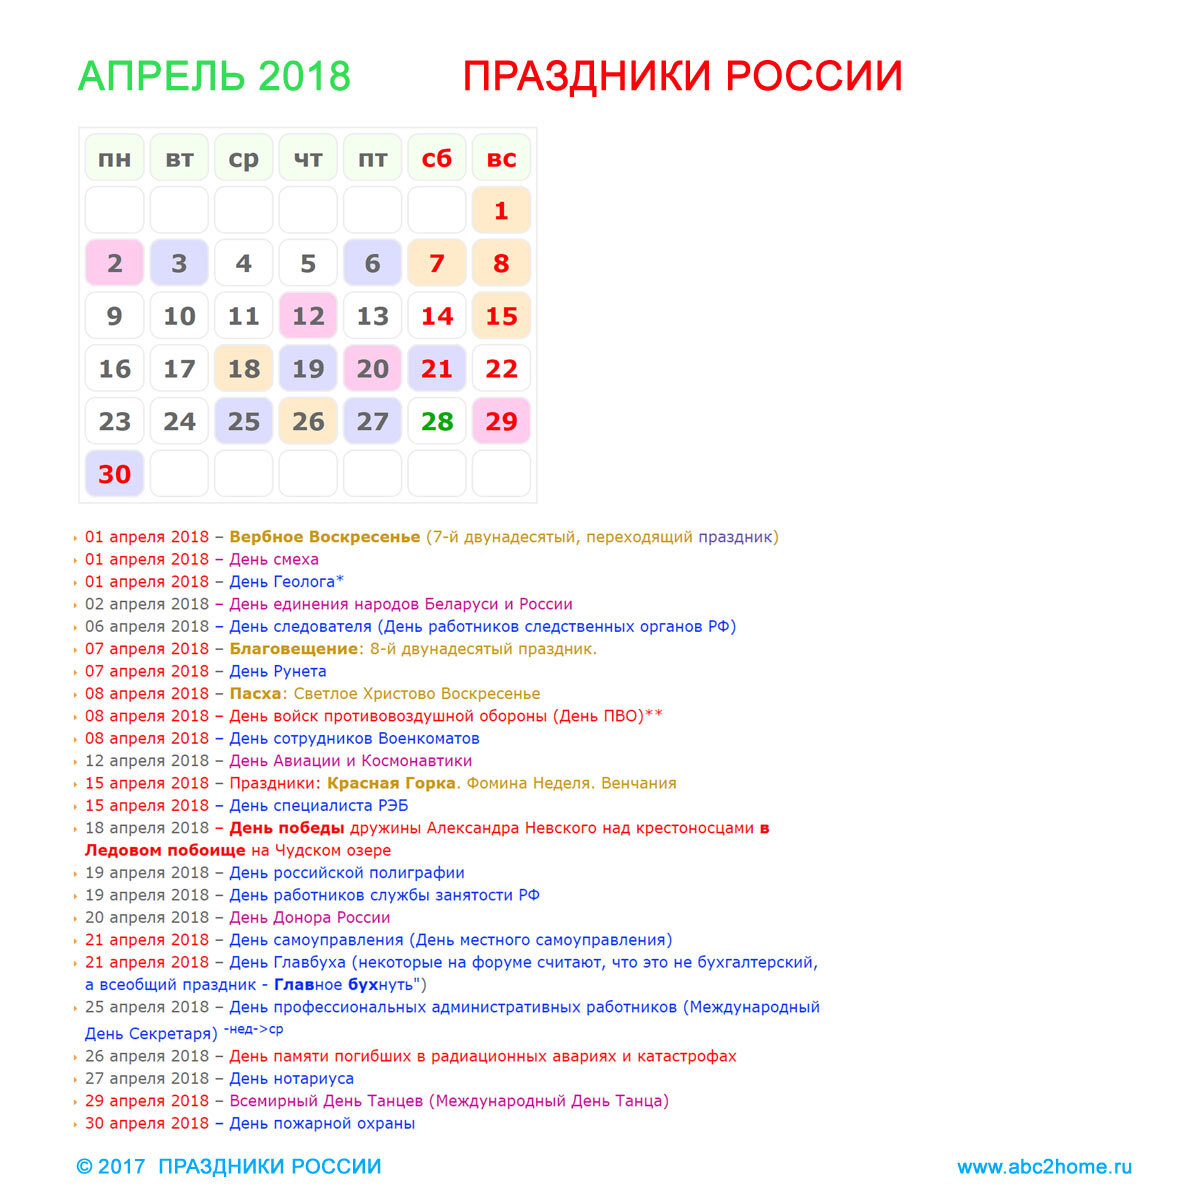 Какие праздники в апреле в мире. Праздники в апреле. Апрель праздники апреля. Праздники в апреле в России. Профессиональные праздники в апреле.